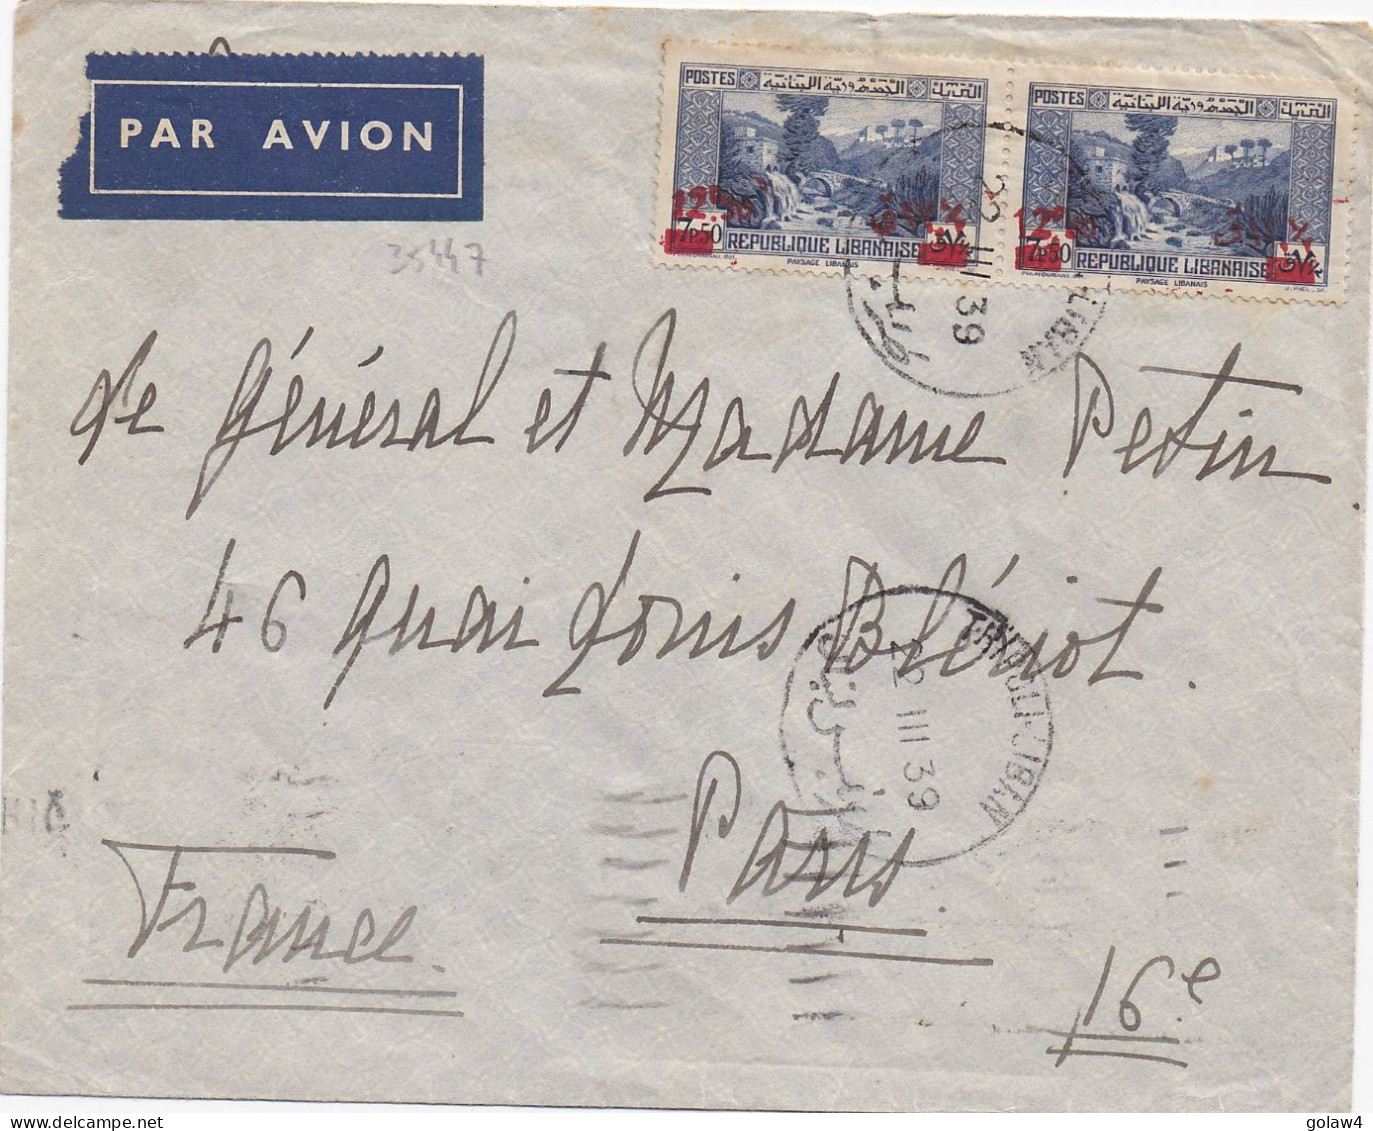 35447# LETTRE PAR AVION Obl TRIPOLI LIBAN 22 III 1939 Pour GENERAL PETIN PARIS Via BEYROUTH LEBANON - Covers & Documents